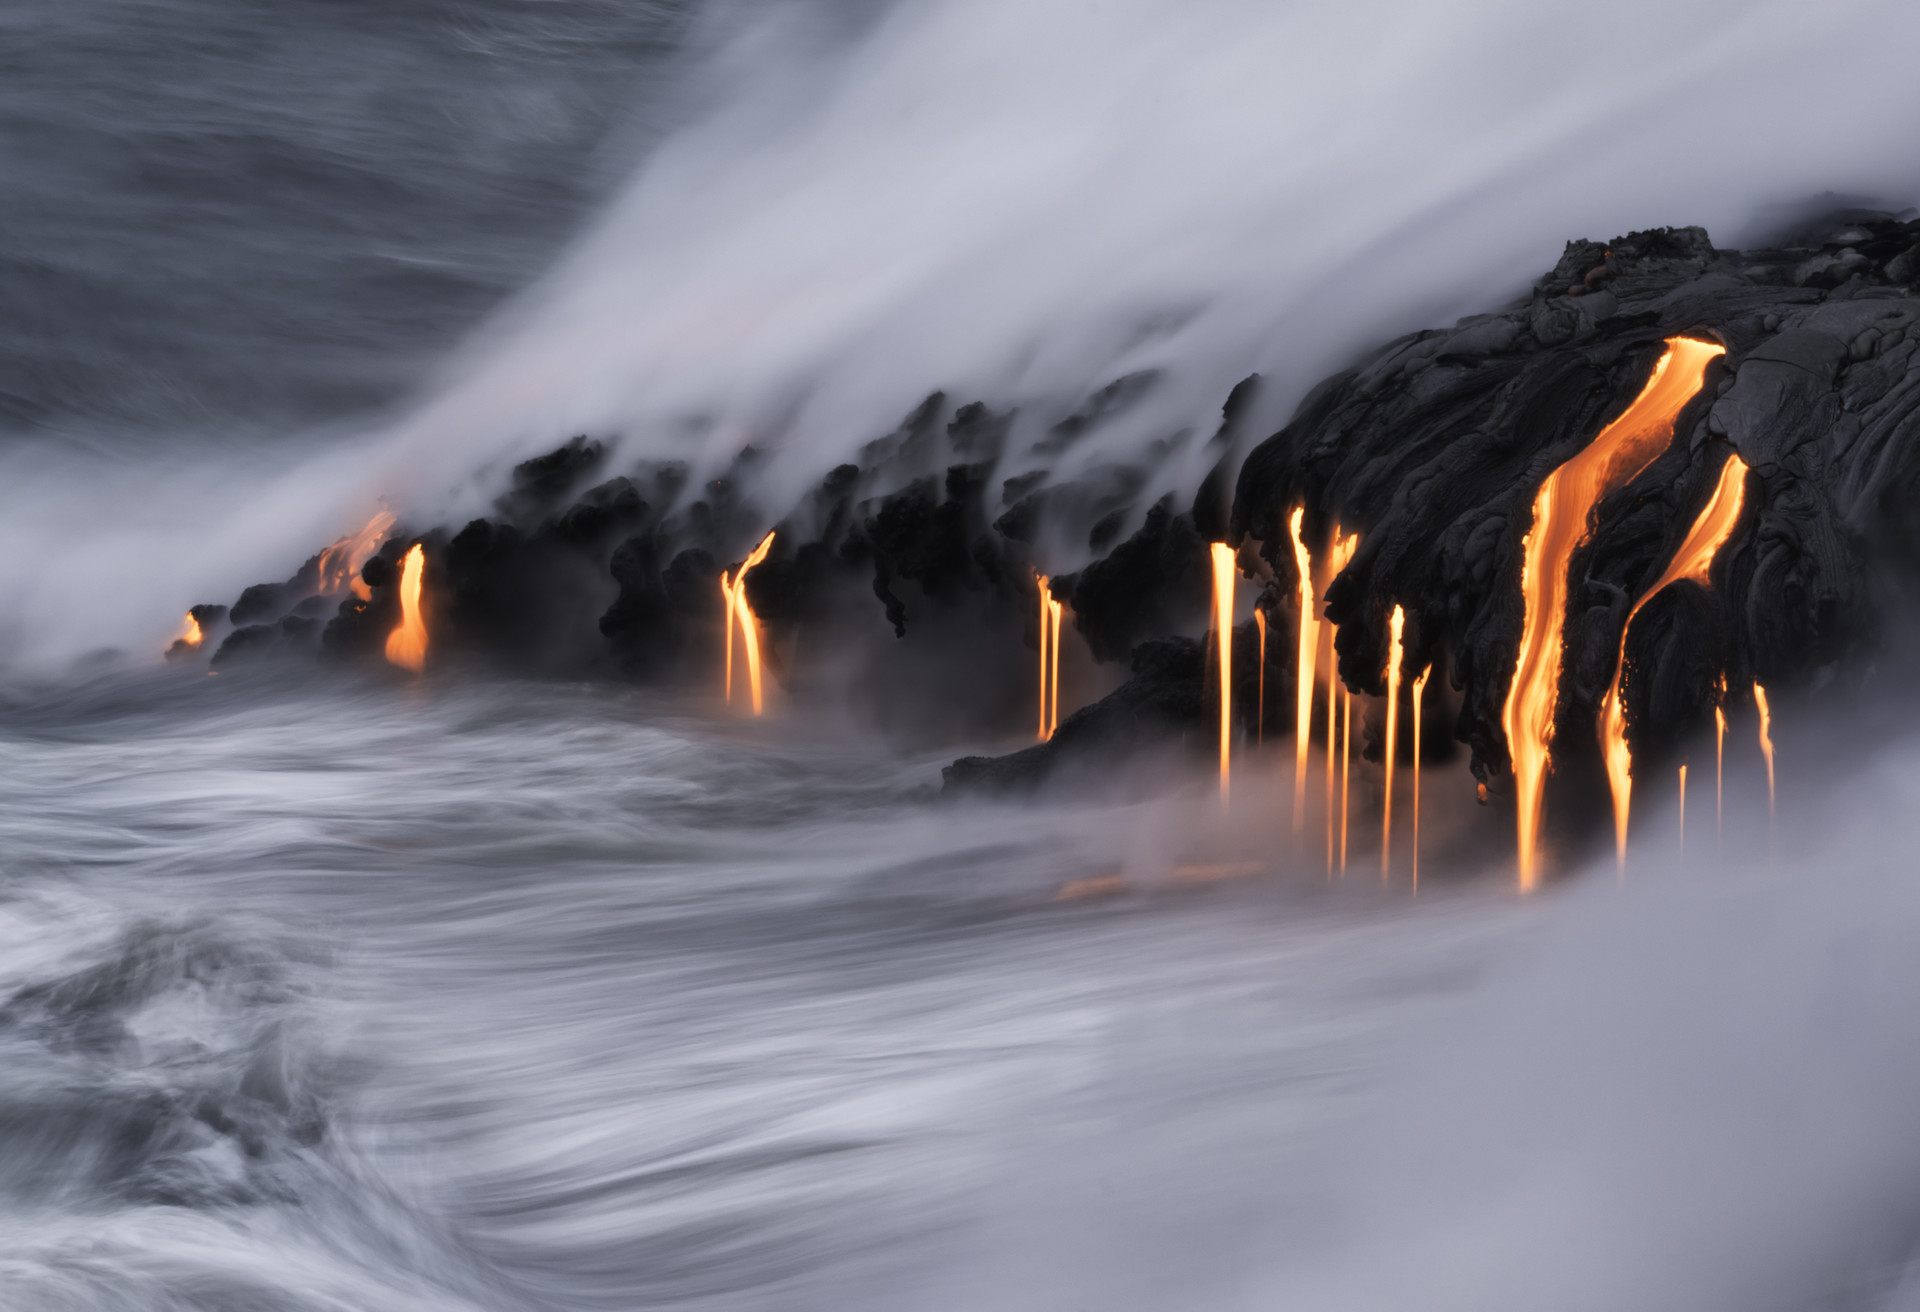 Wyspa Big Island to dosłownie miejsce spotkania wody i ognia